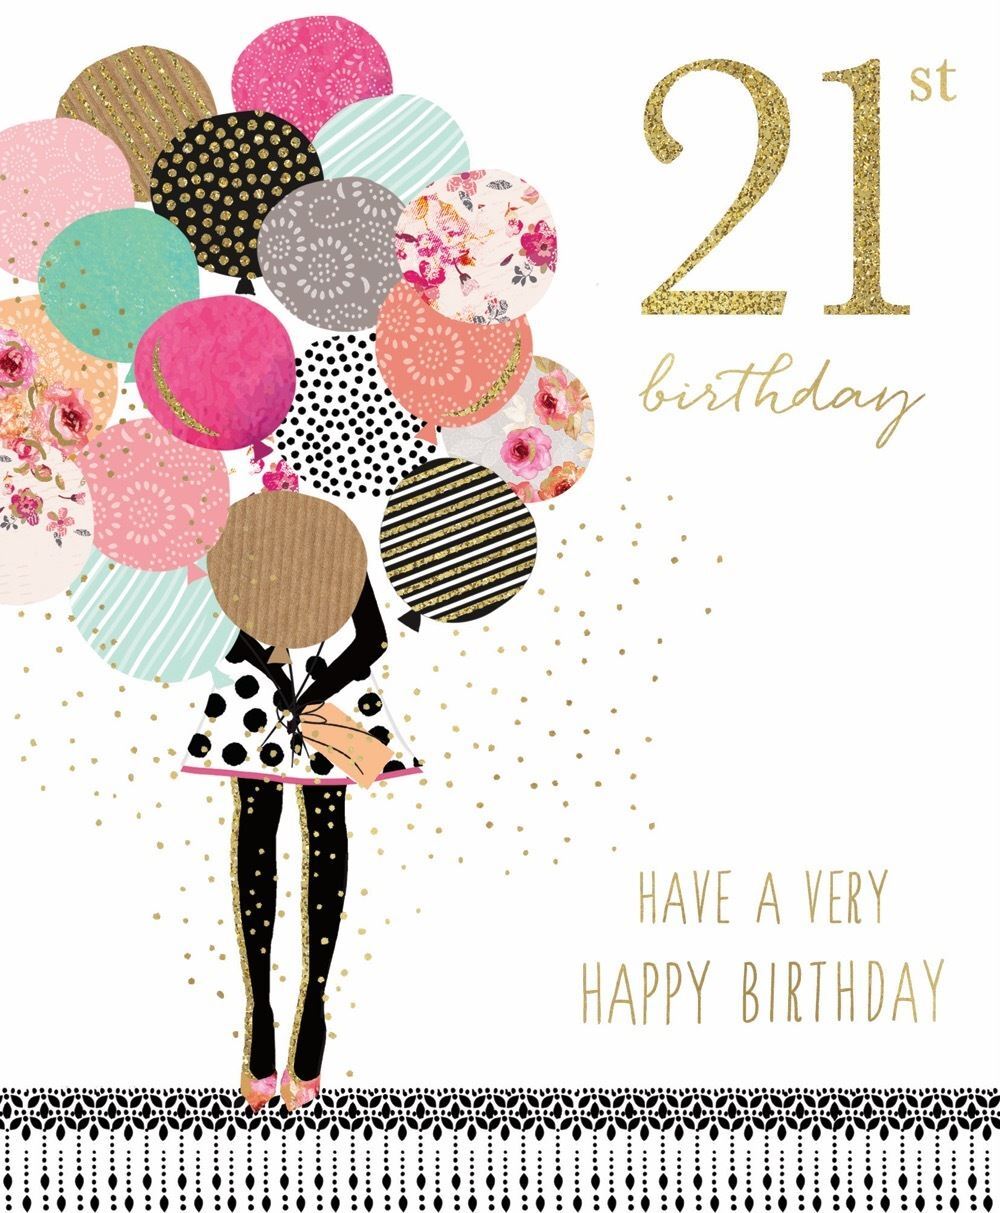 happy 21st birthday for girls